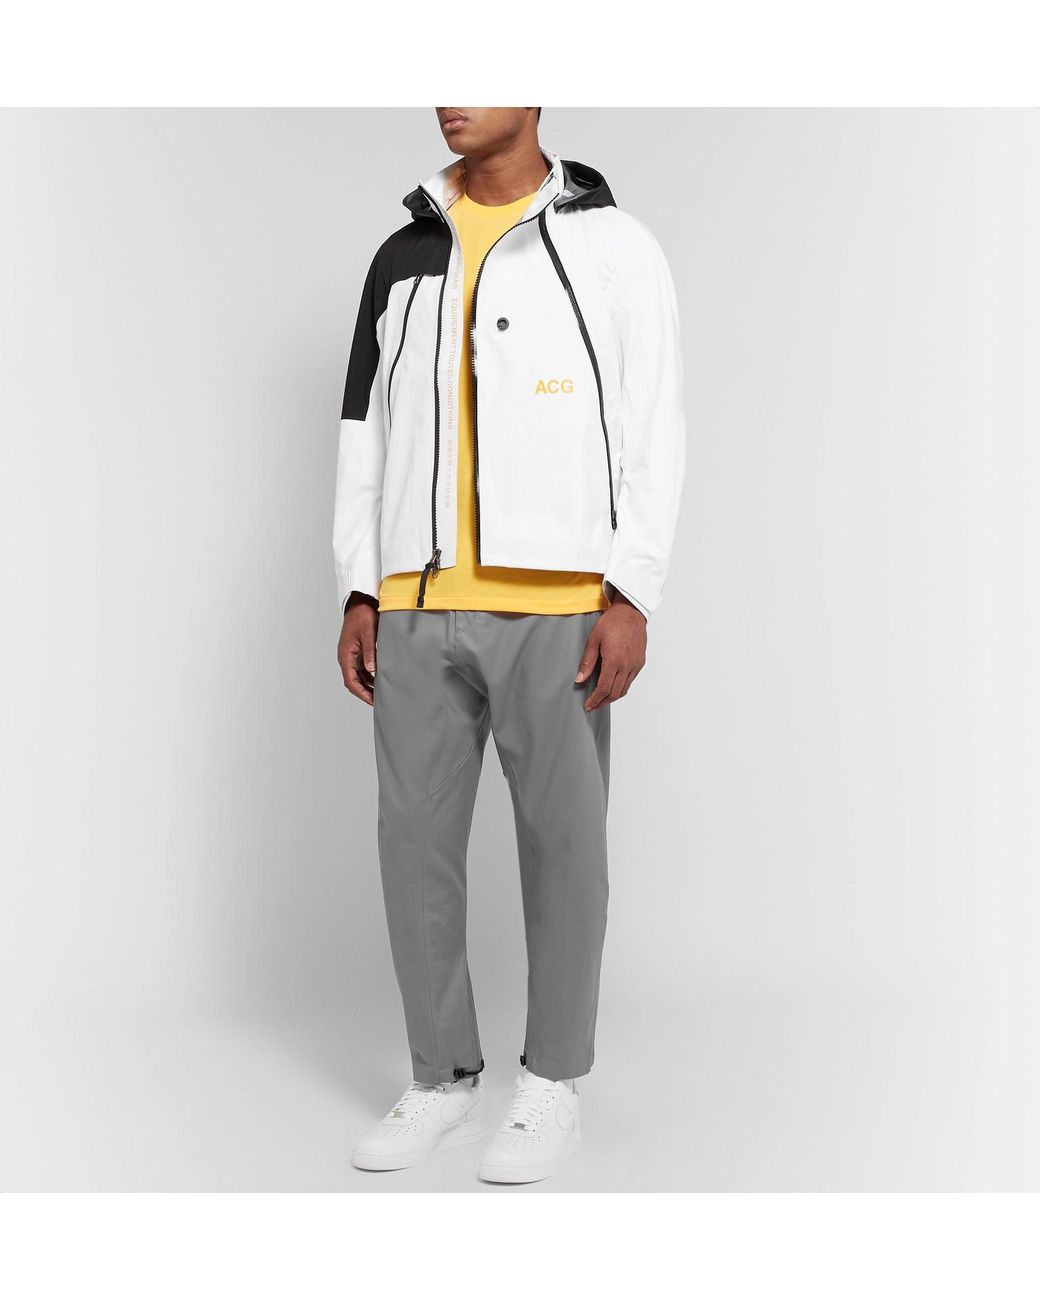 Nike Men's White Lab Acg Deploy Gore-tex Jacket